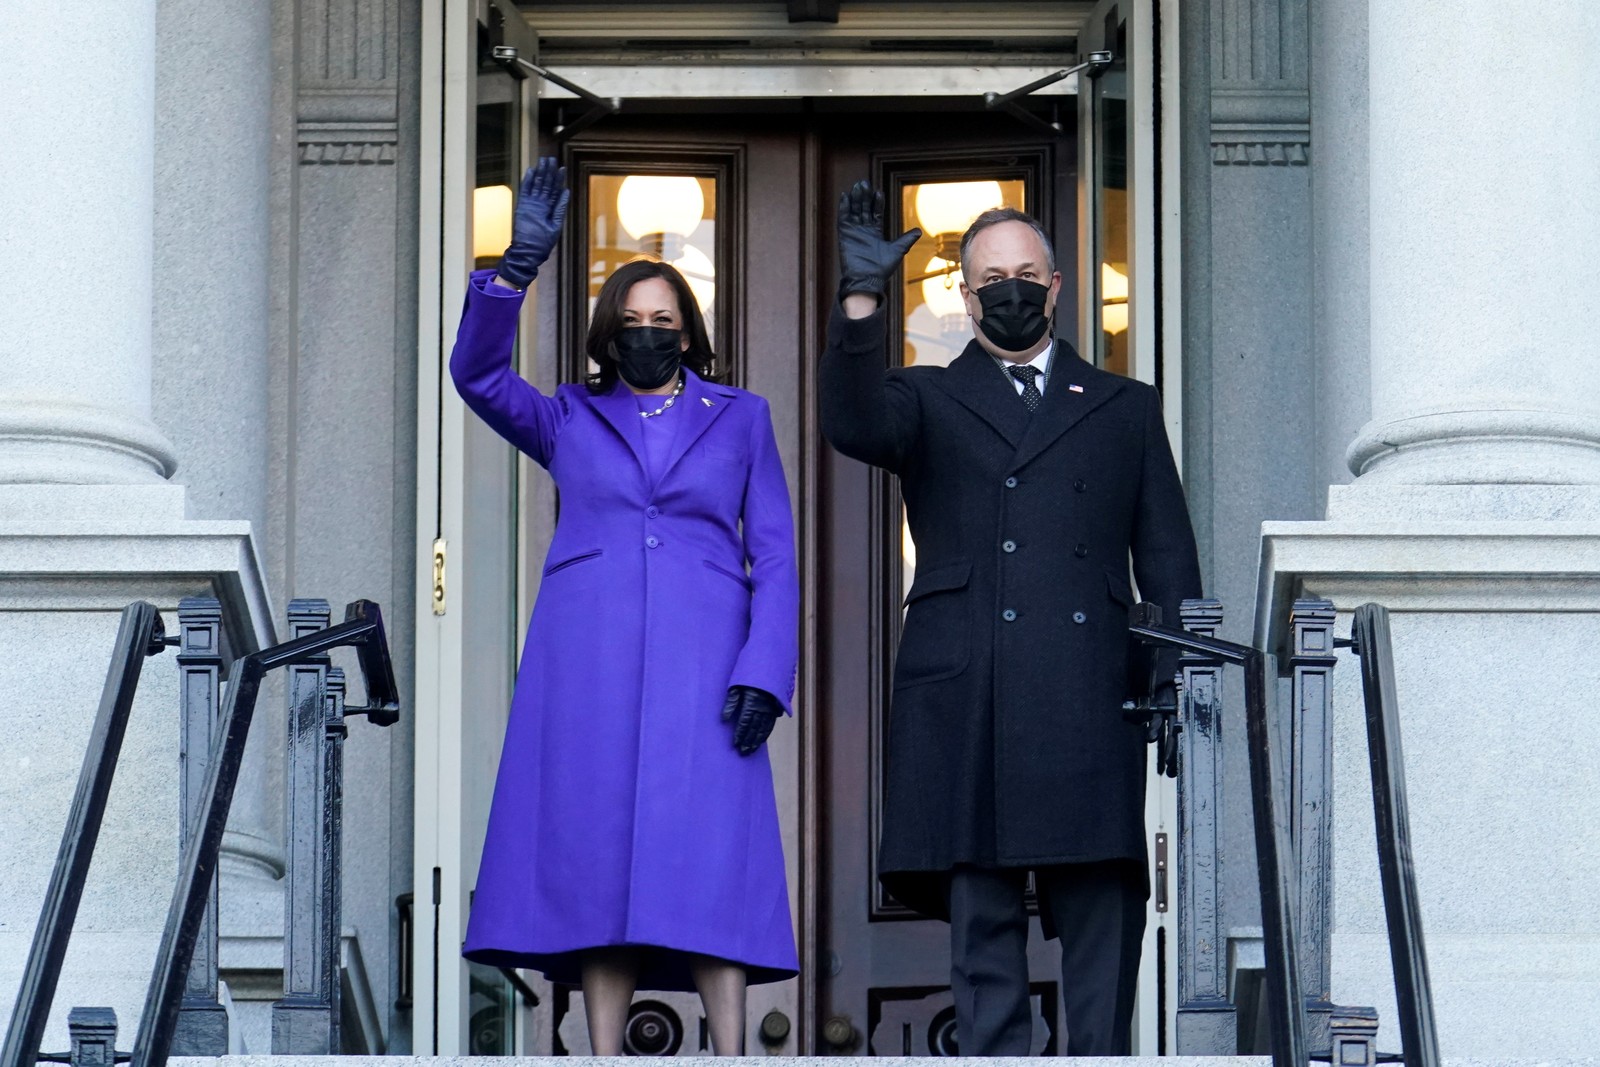 A vice-presidente, Kamala Harris, e seu marido, Douglas Emhoff, acenam da entrada do Eisenhower Executive Office Building, na Casa Branca. Casal repetiu a caminhada Biden até a sede do governoREUTERS